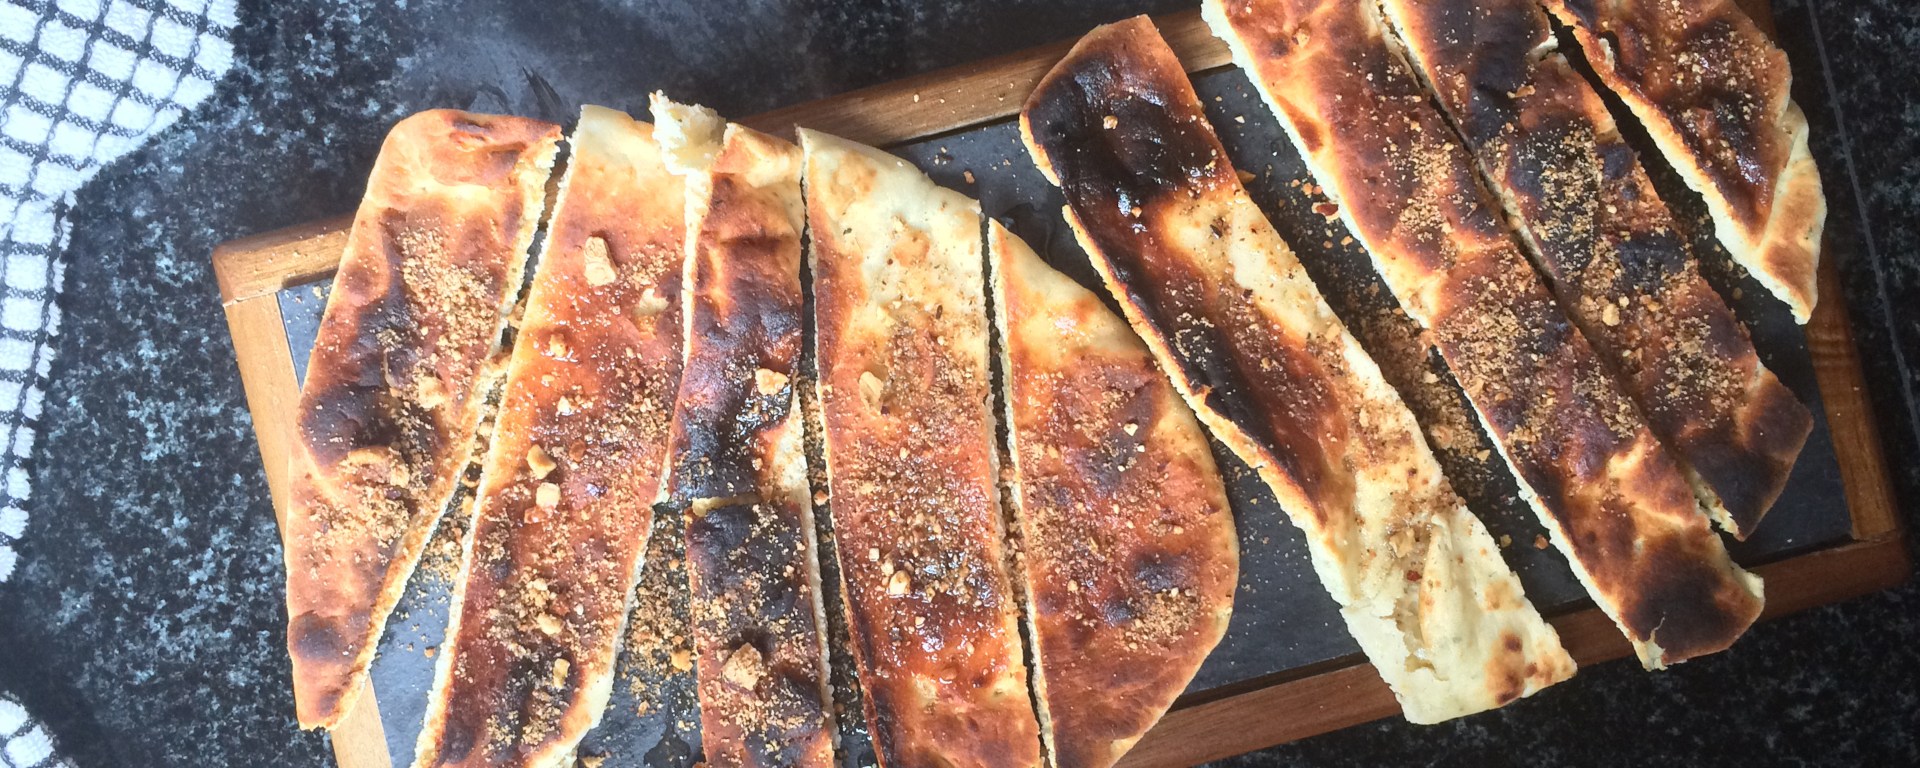 Toasted Flatbread and Hazelnut Dukkah